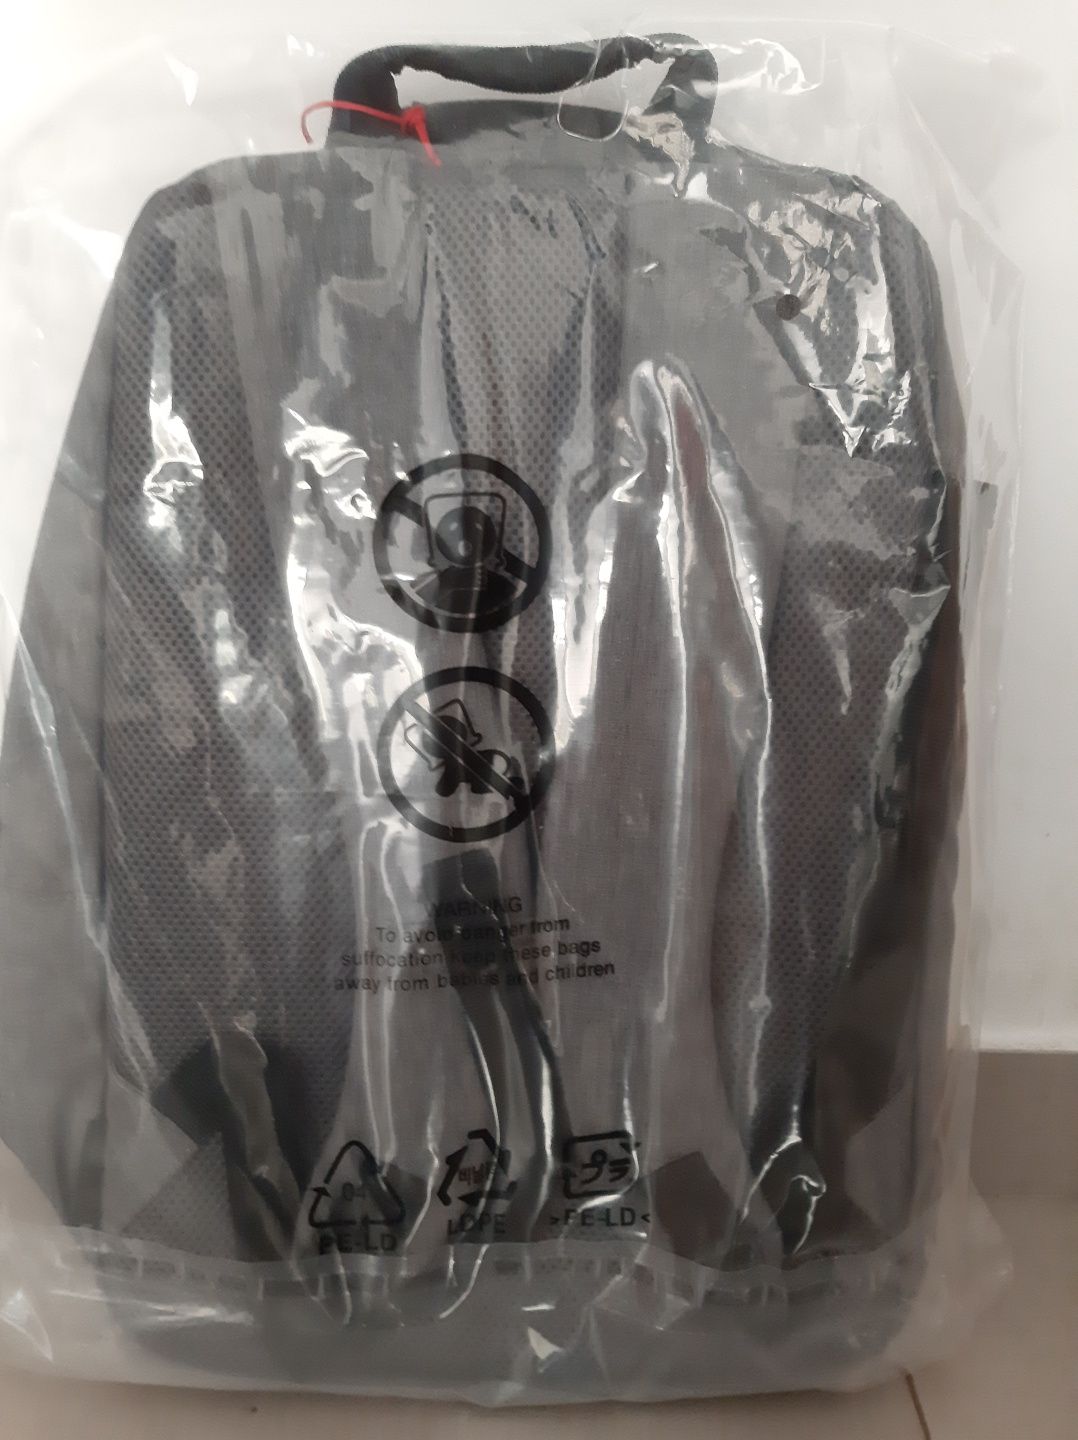 Mochila Huawei backpack Swift cinzenta